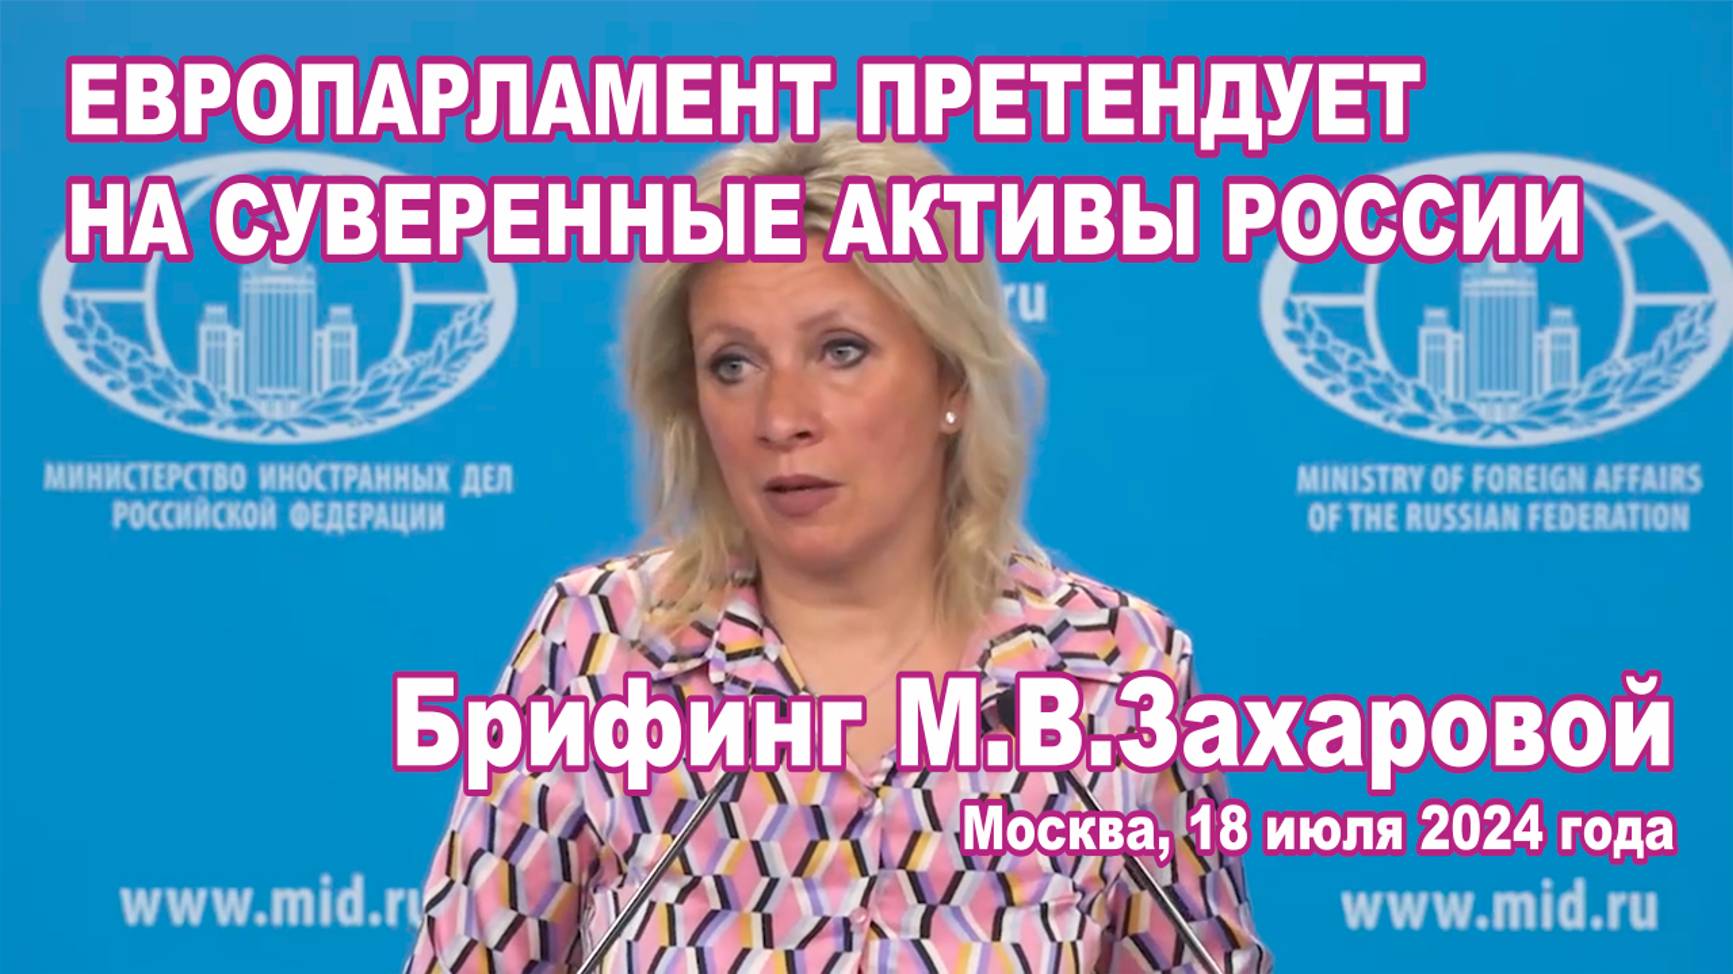 Брифинг М.В.Захаровой 18.07.2024. Европарламент претендует на суверенные активы России.